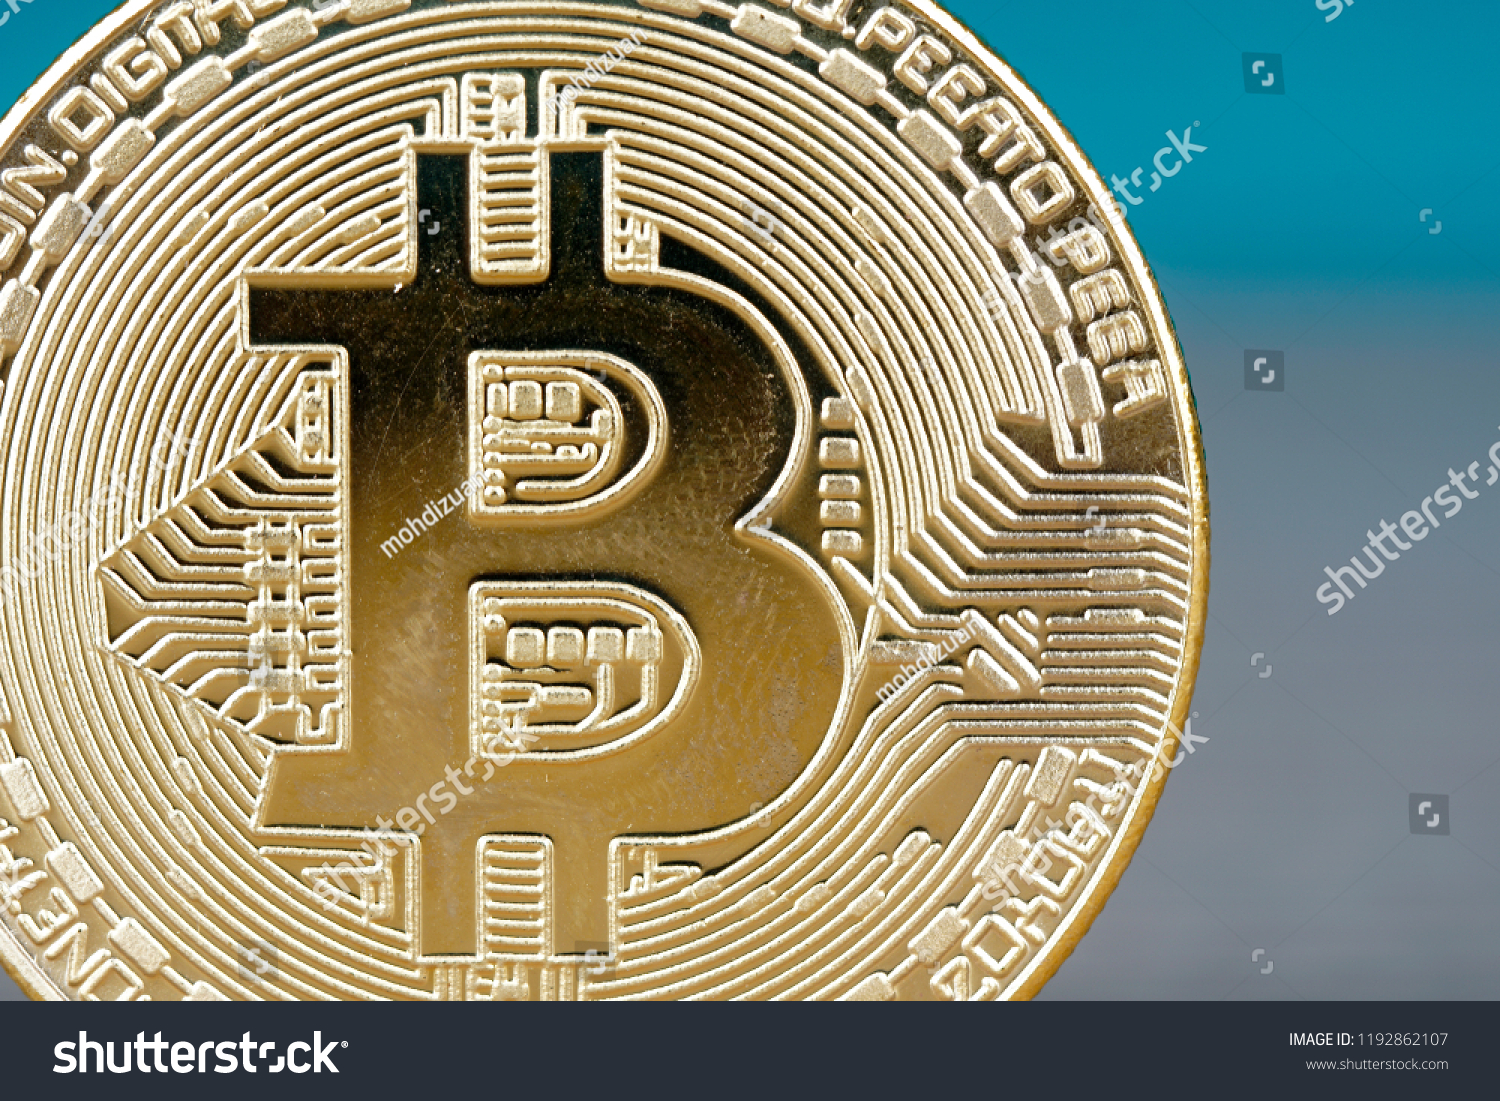 Bitcoin digital decentralized peer to peer ethereum convert to cash